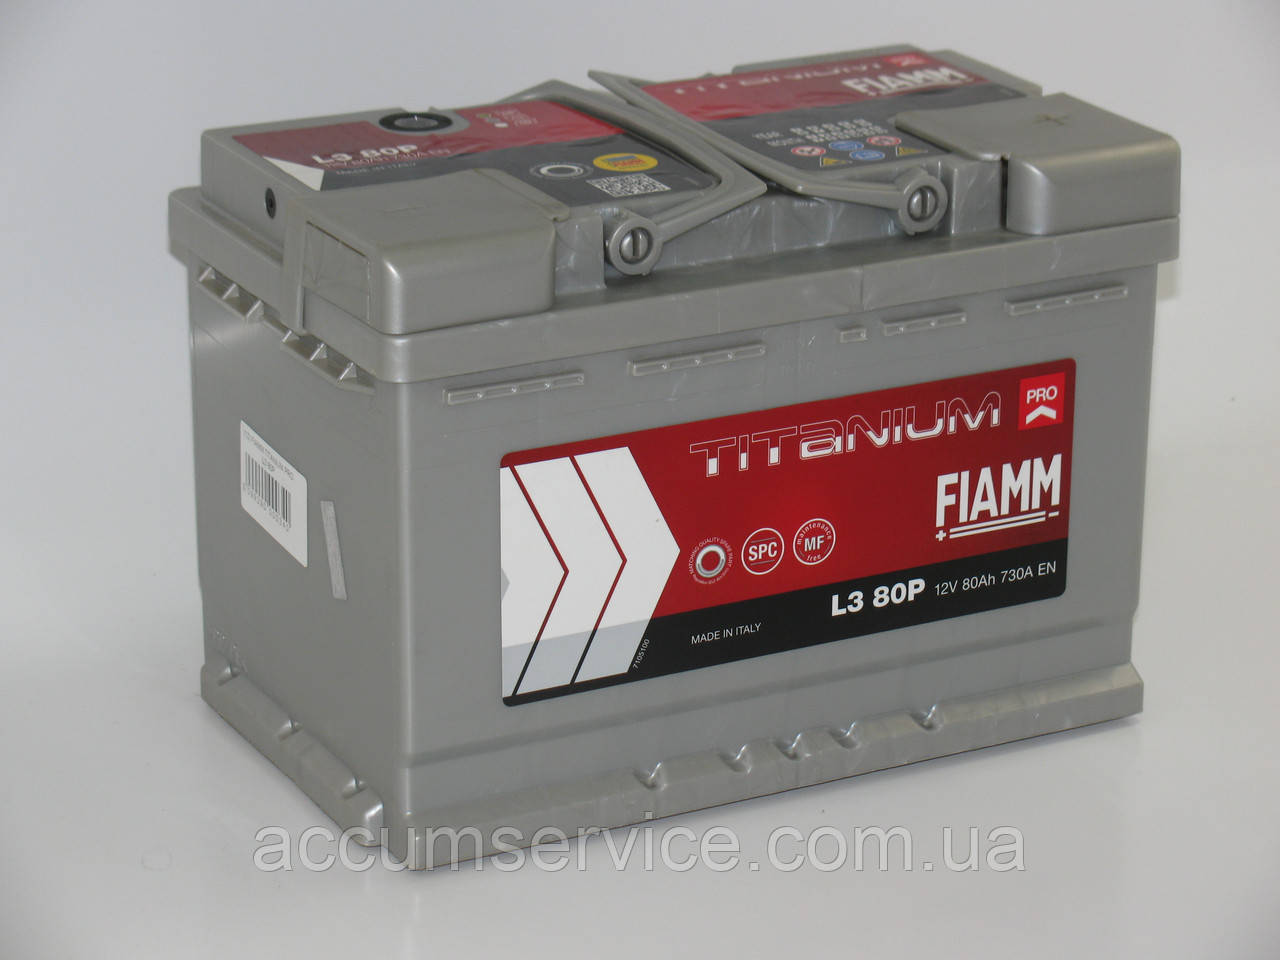 Акумулятор FIAMM TITANIUM PRO L3 80P